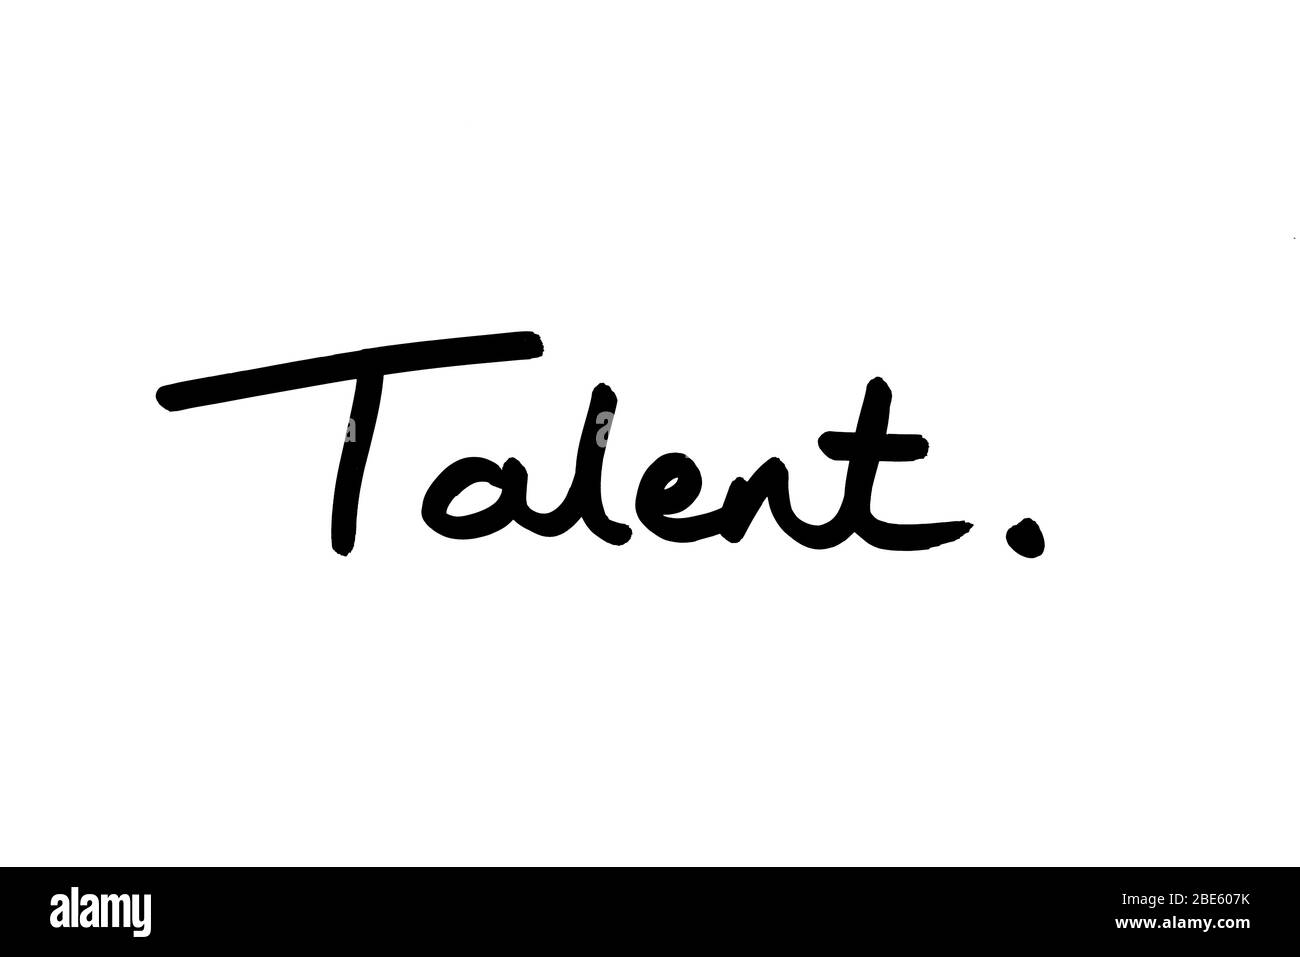 La parola Talent è scritta a mano su sfondo bianco. Foto Stock